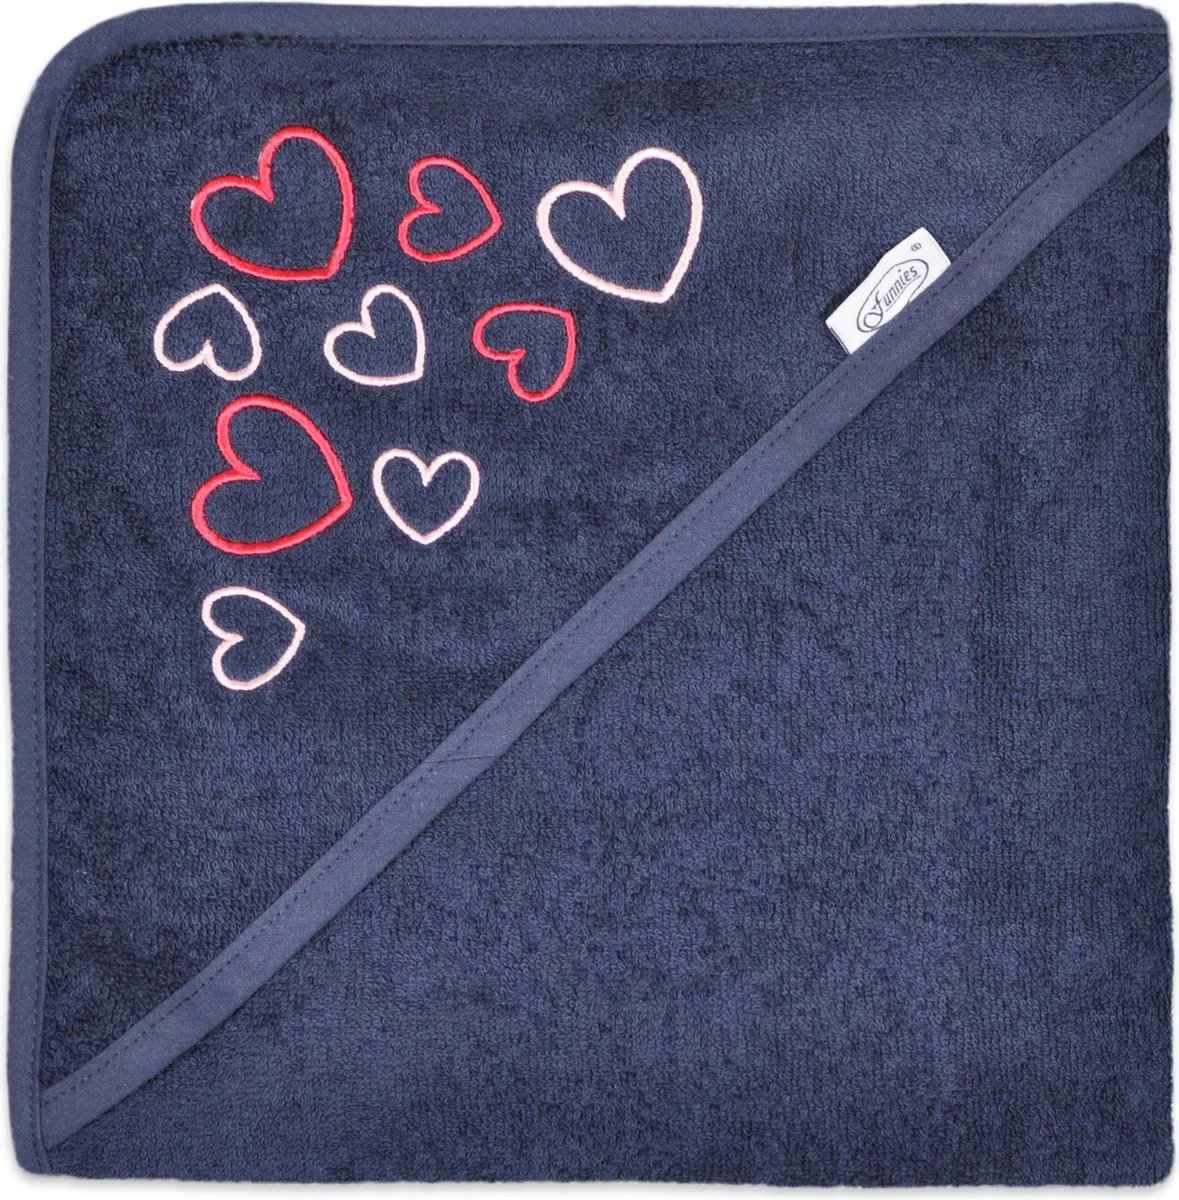 badcape hart navy | funnies | badcape met borduring | hartjes | blauw met roze | baby verzorging | zwemmen of badderen | 100% zuivere katoen, badstof | 80x80 cm